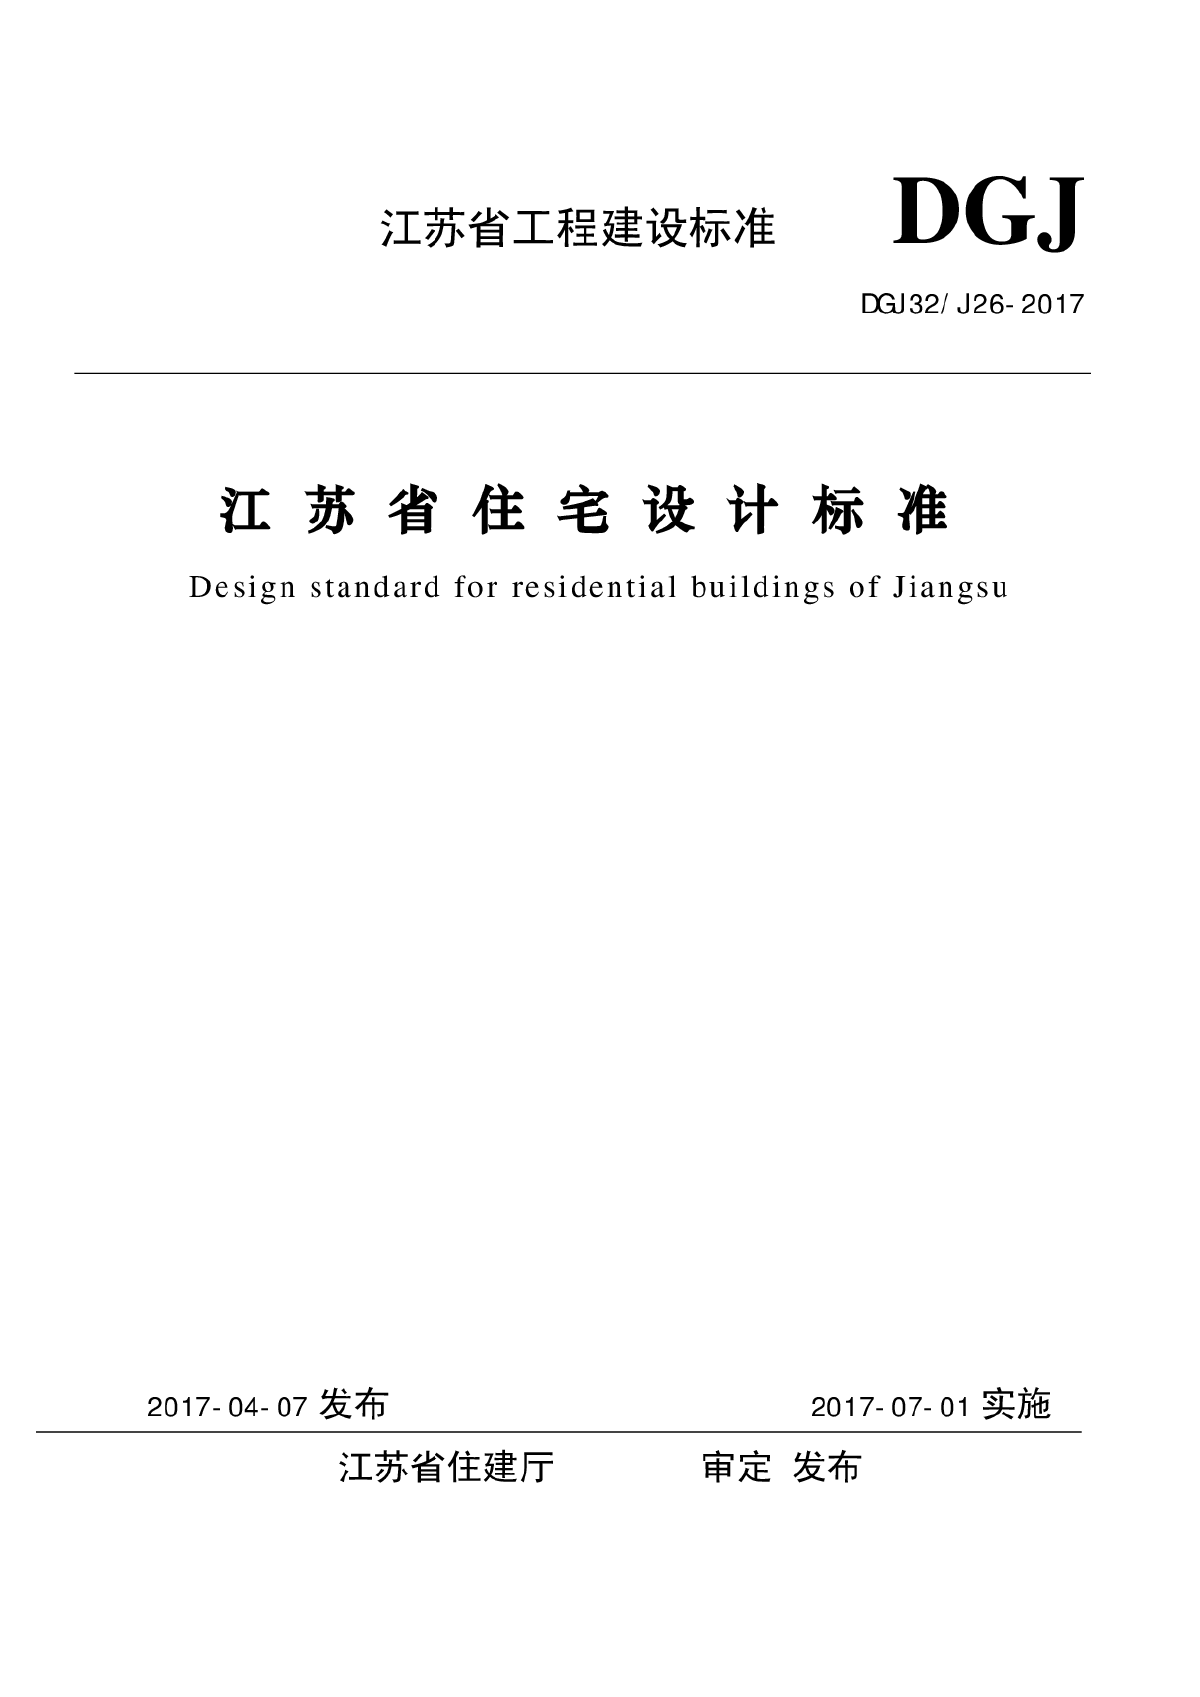 《江苏省住宅设计标准》2017版